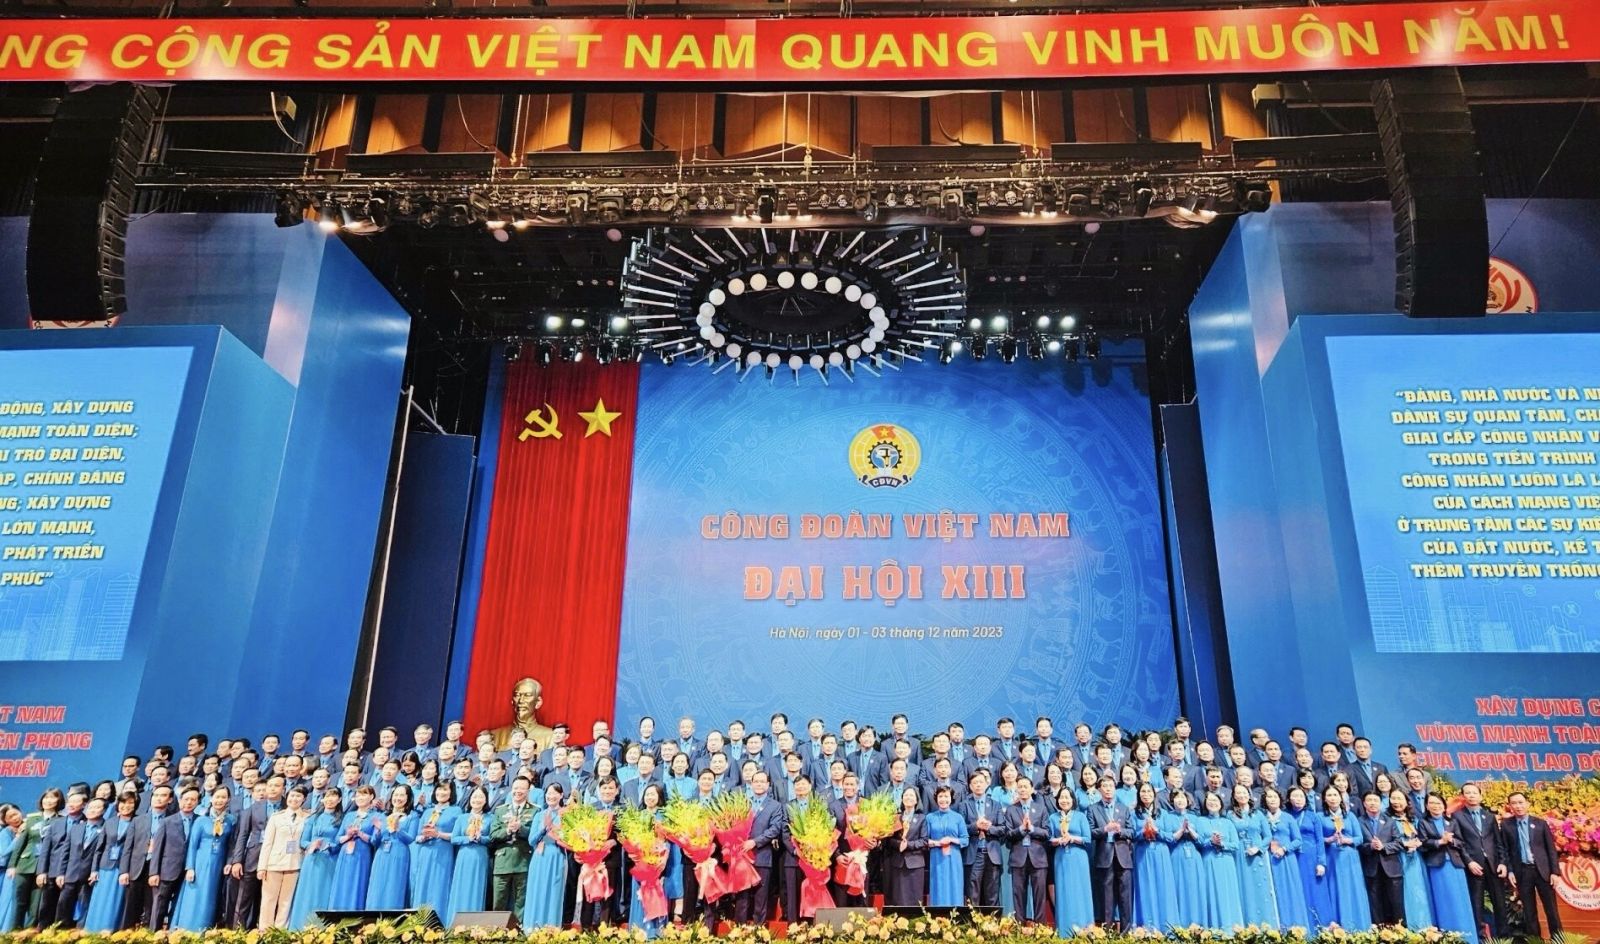 Đồng chí Lê Quang Toản trúng cử Ban Chấp hành Tổng Liên đoàn Lao động Việt Nam